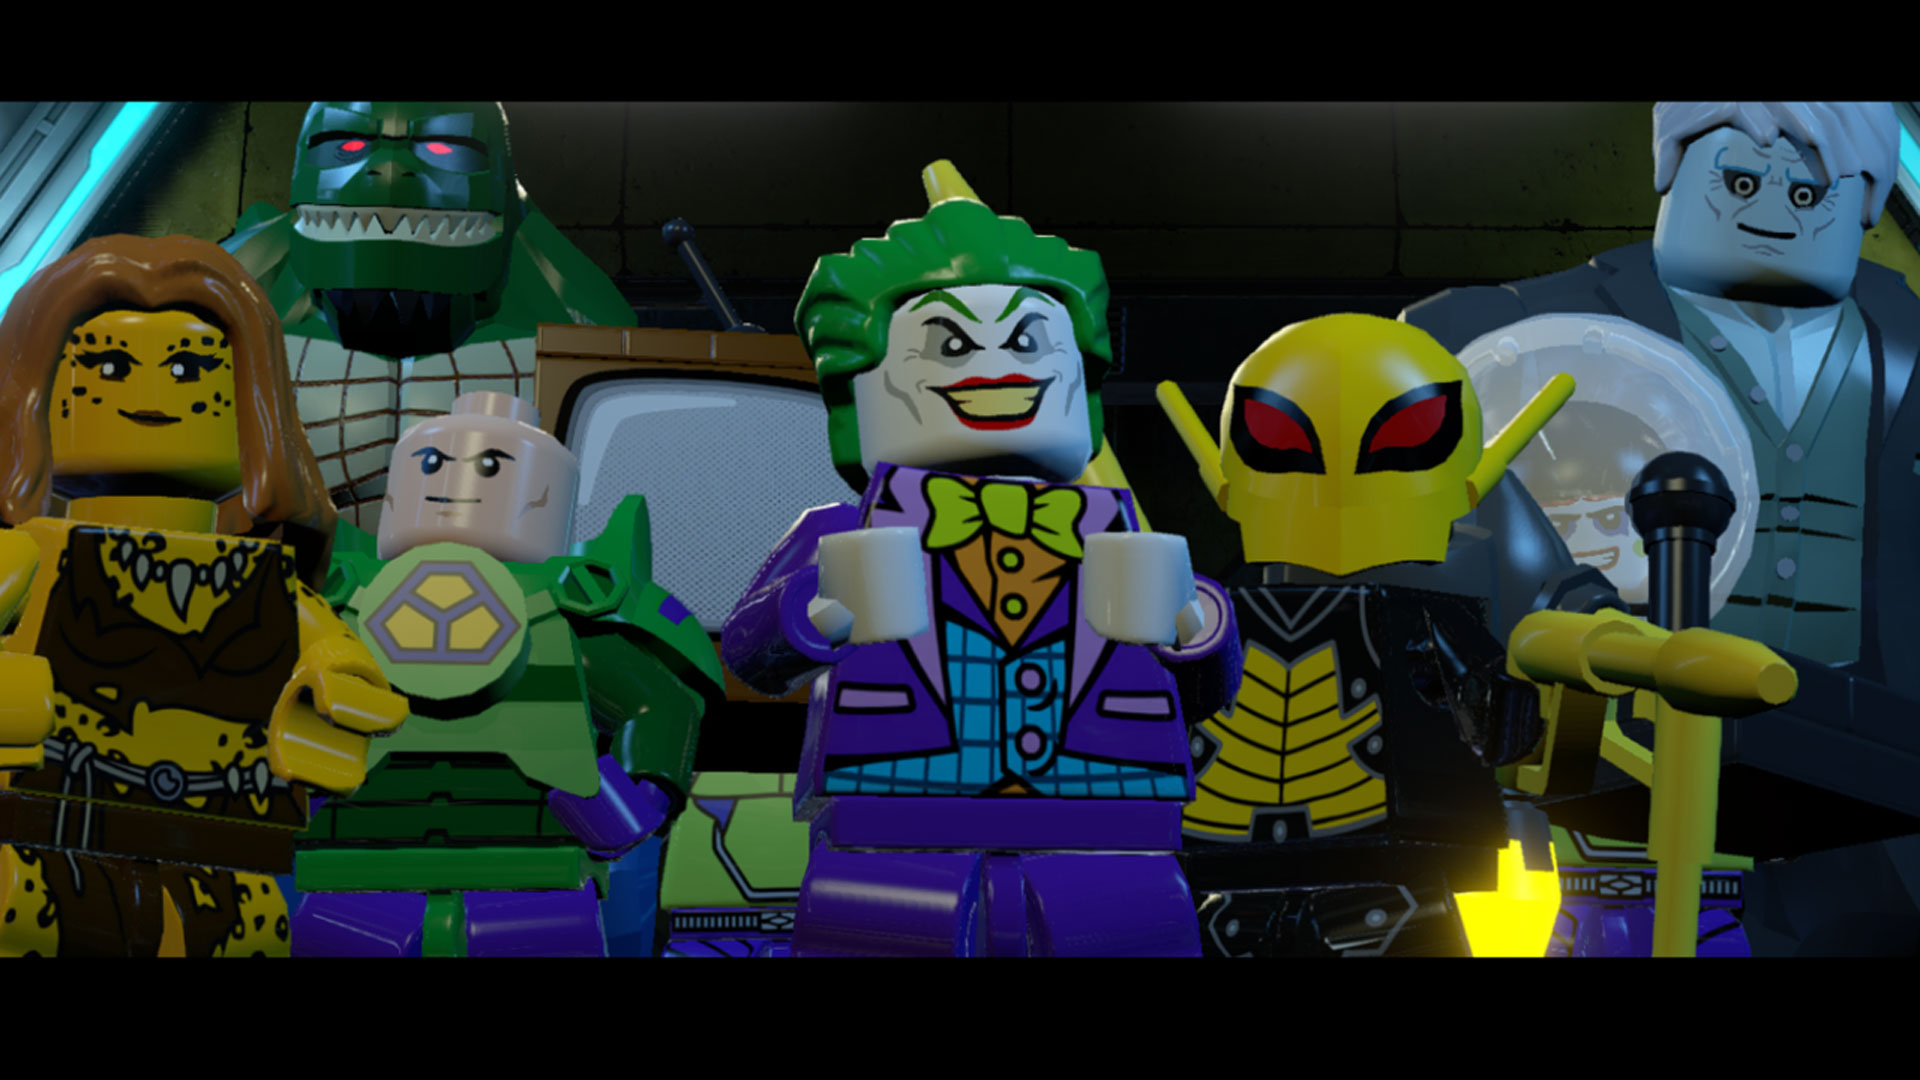 LEGO Batman 3: Beyond Gotham Premium Edition Steam Key